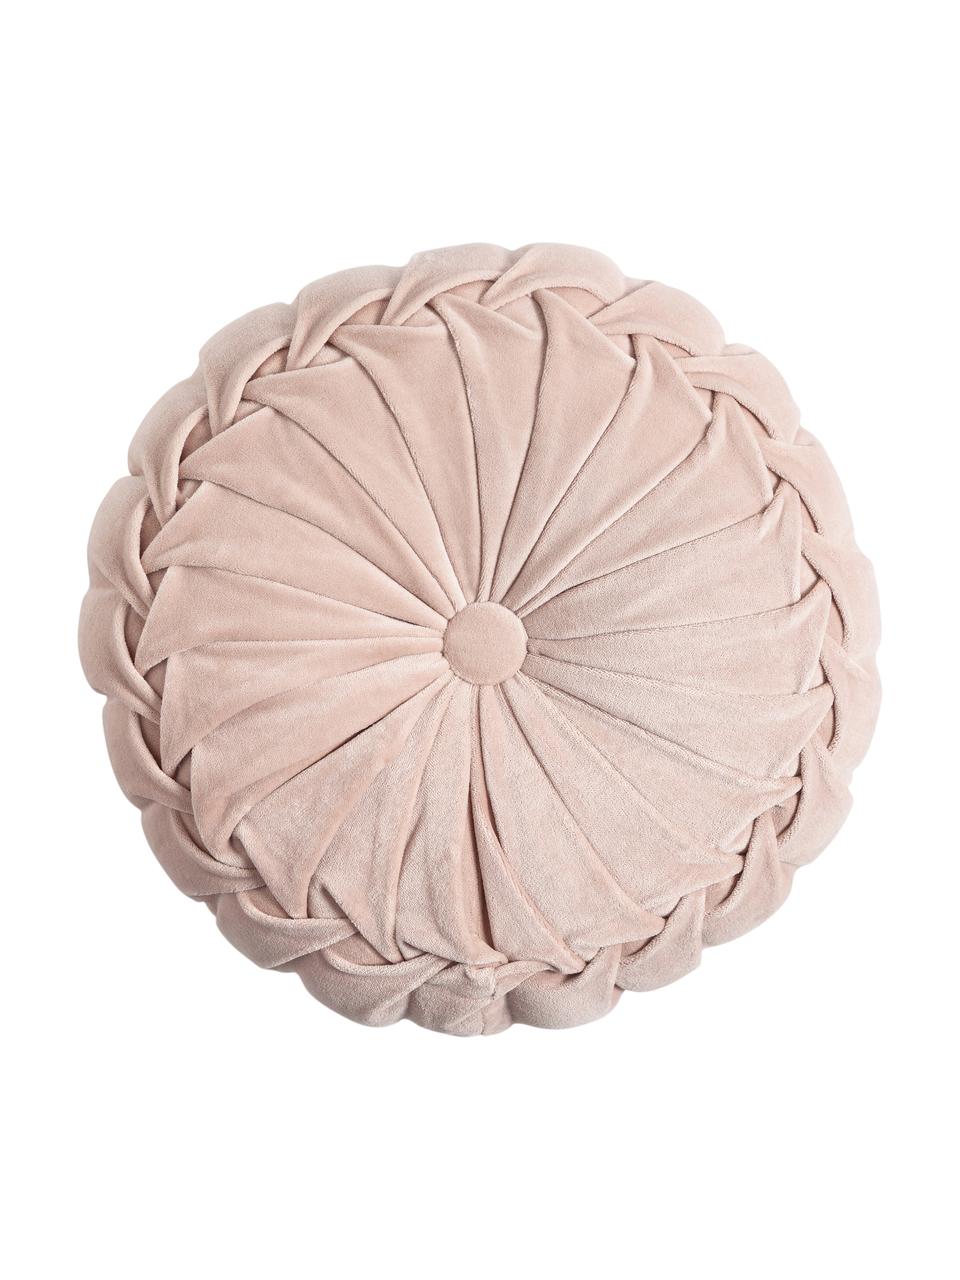 Cuscino rotondo in velluto con imbottitura Kanan, Rivestimento: 100% velluto di cotone, Rosa cipria, Ø 40 cm